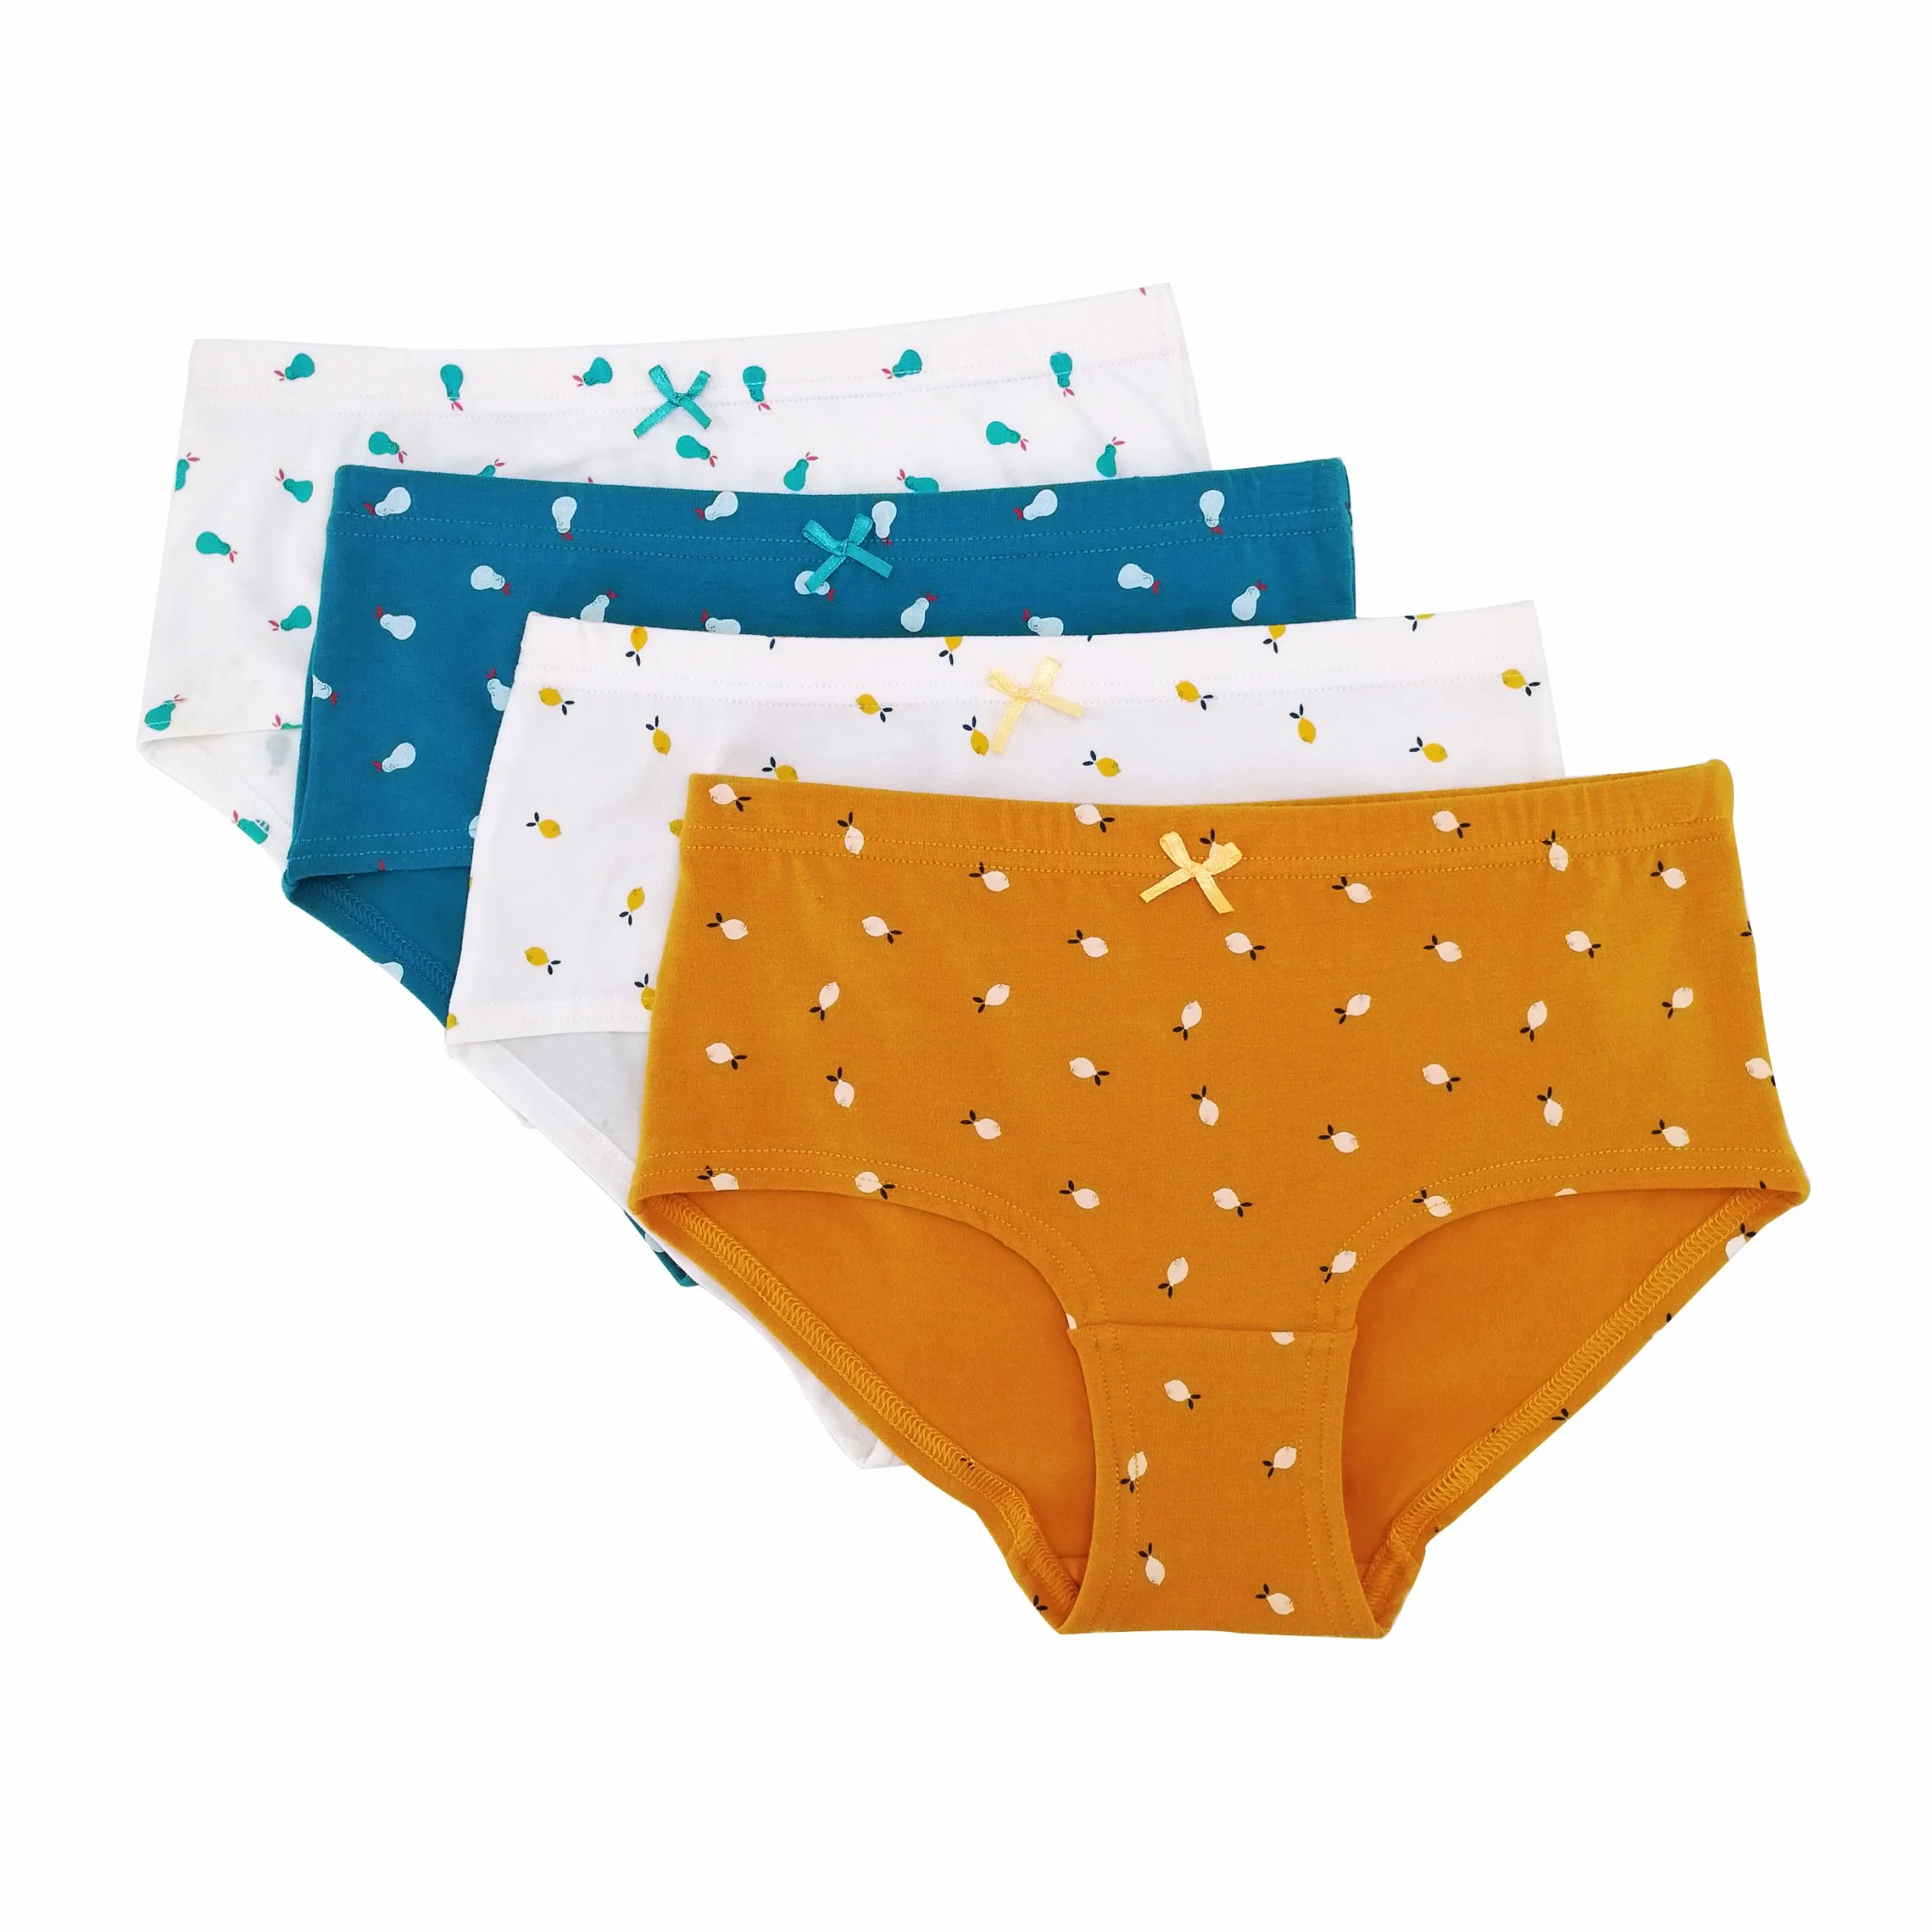 Four Colors Fruit Pattern Printed Soft Cotton Women Underwear Set